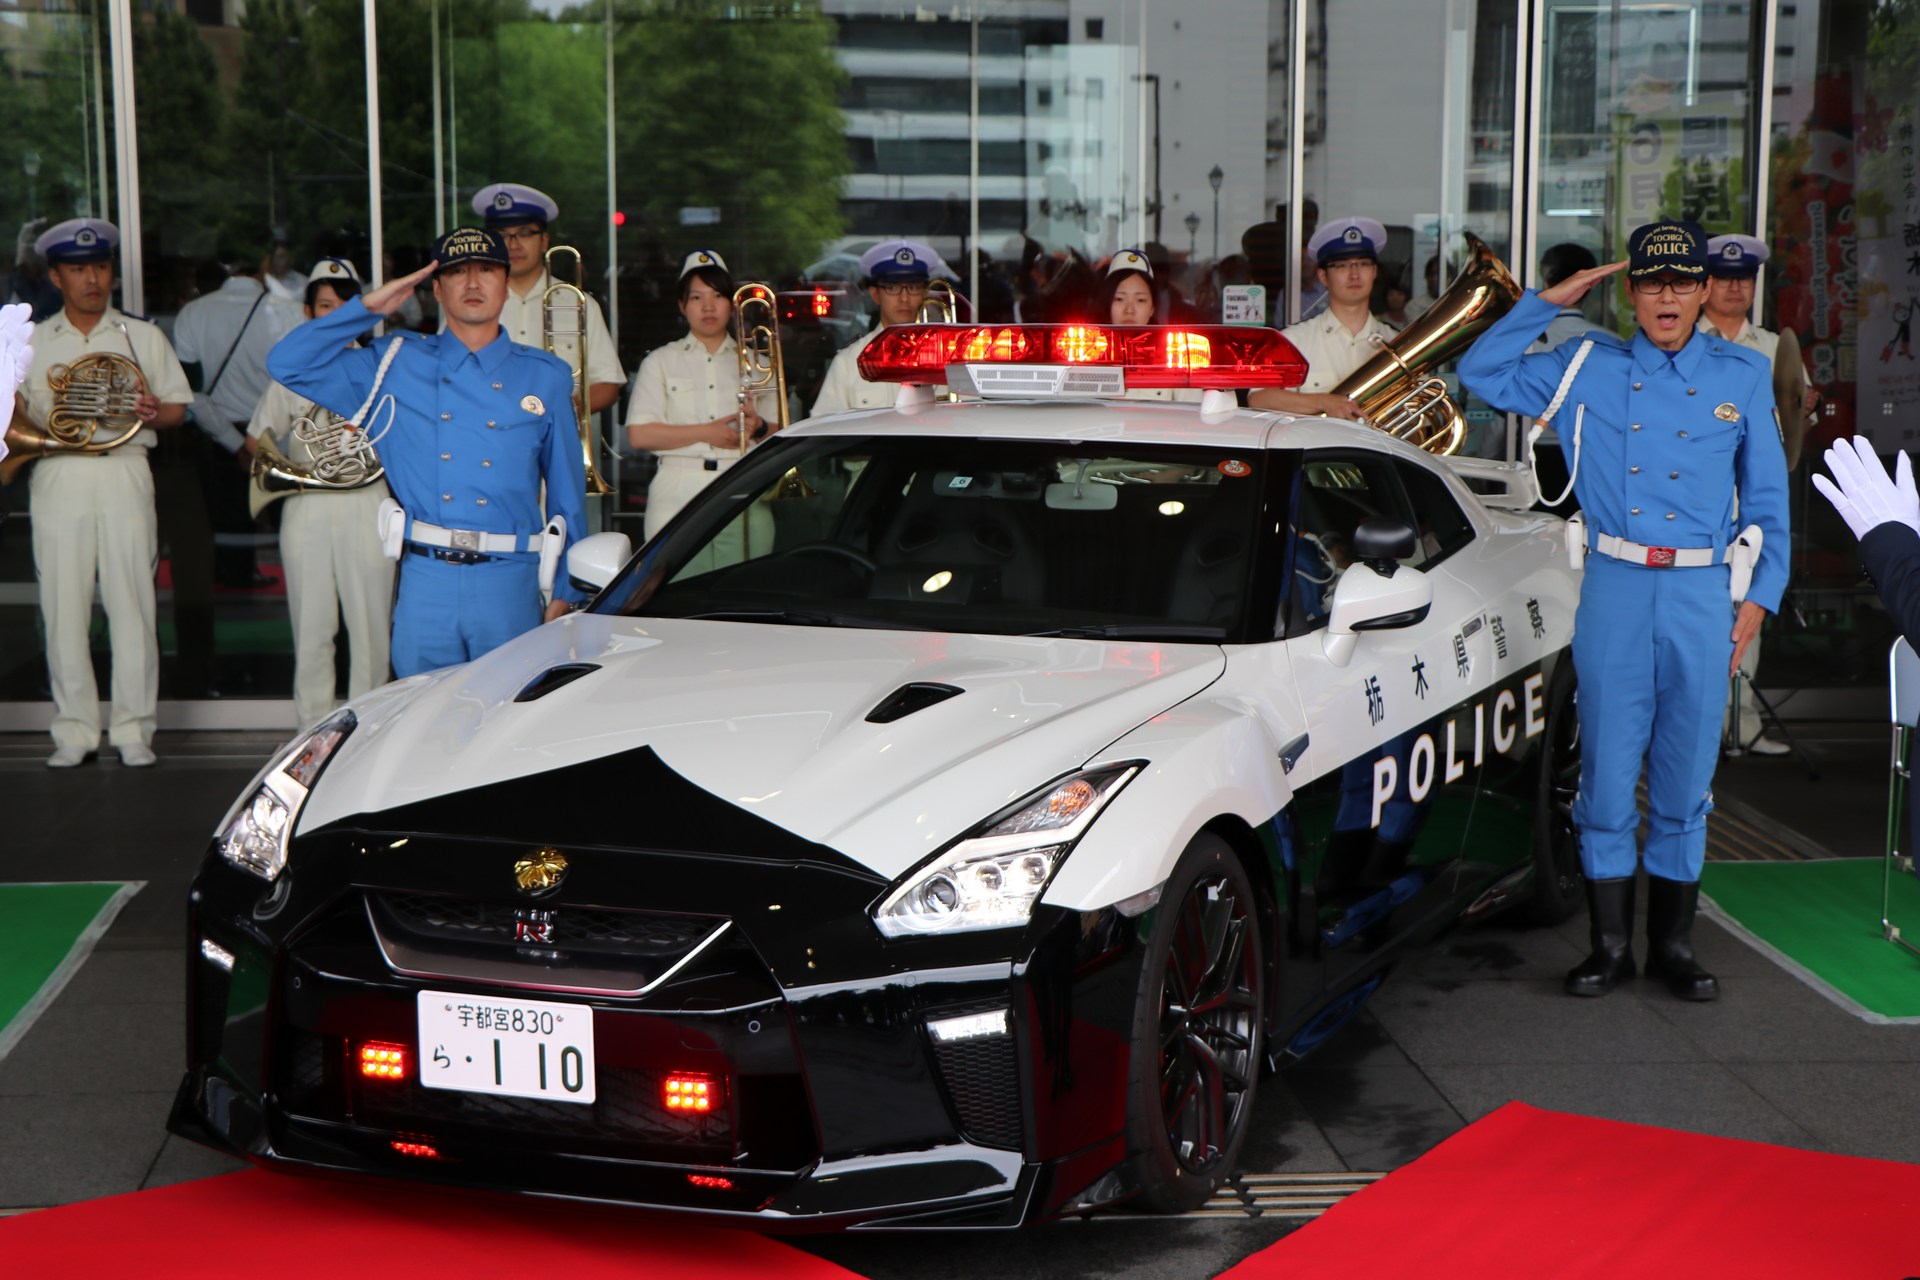 "بالصور" نيسان GT-R تدخل الخدمة رسميا بأسطول الشرطة اليابانية 33